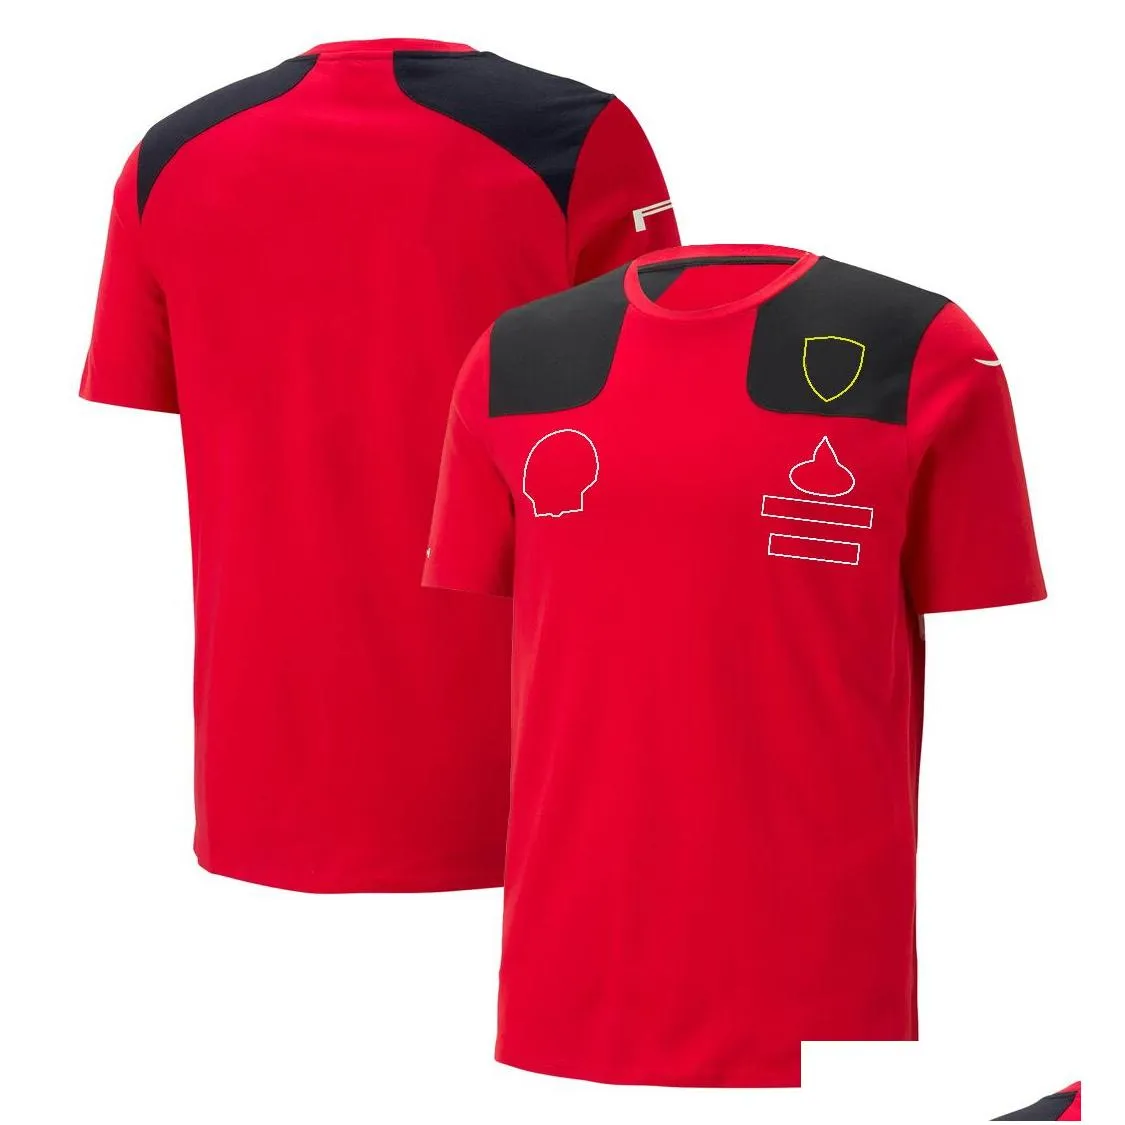 Novas camisetas masculinas e femininas Fórmula 1 F1 Polo Roupas Top Vestuário de motocicleta a maioria dos produtos Forma Red Team Racing Suit Lapela Roupas Trabalho Manga Curta Tp1d